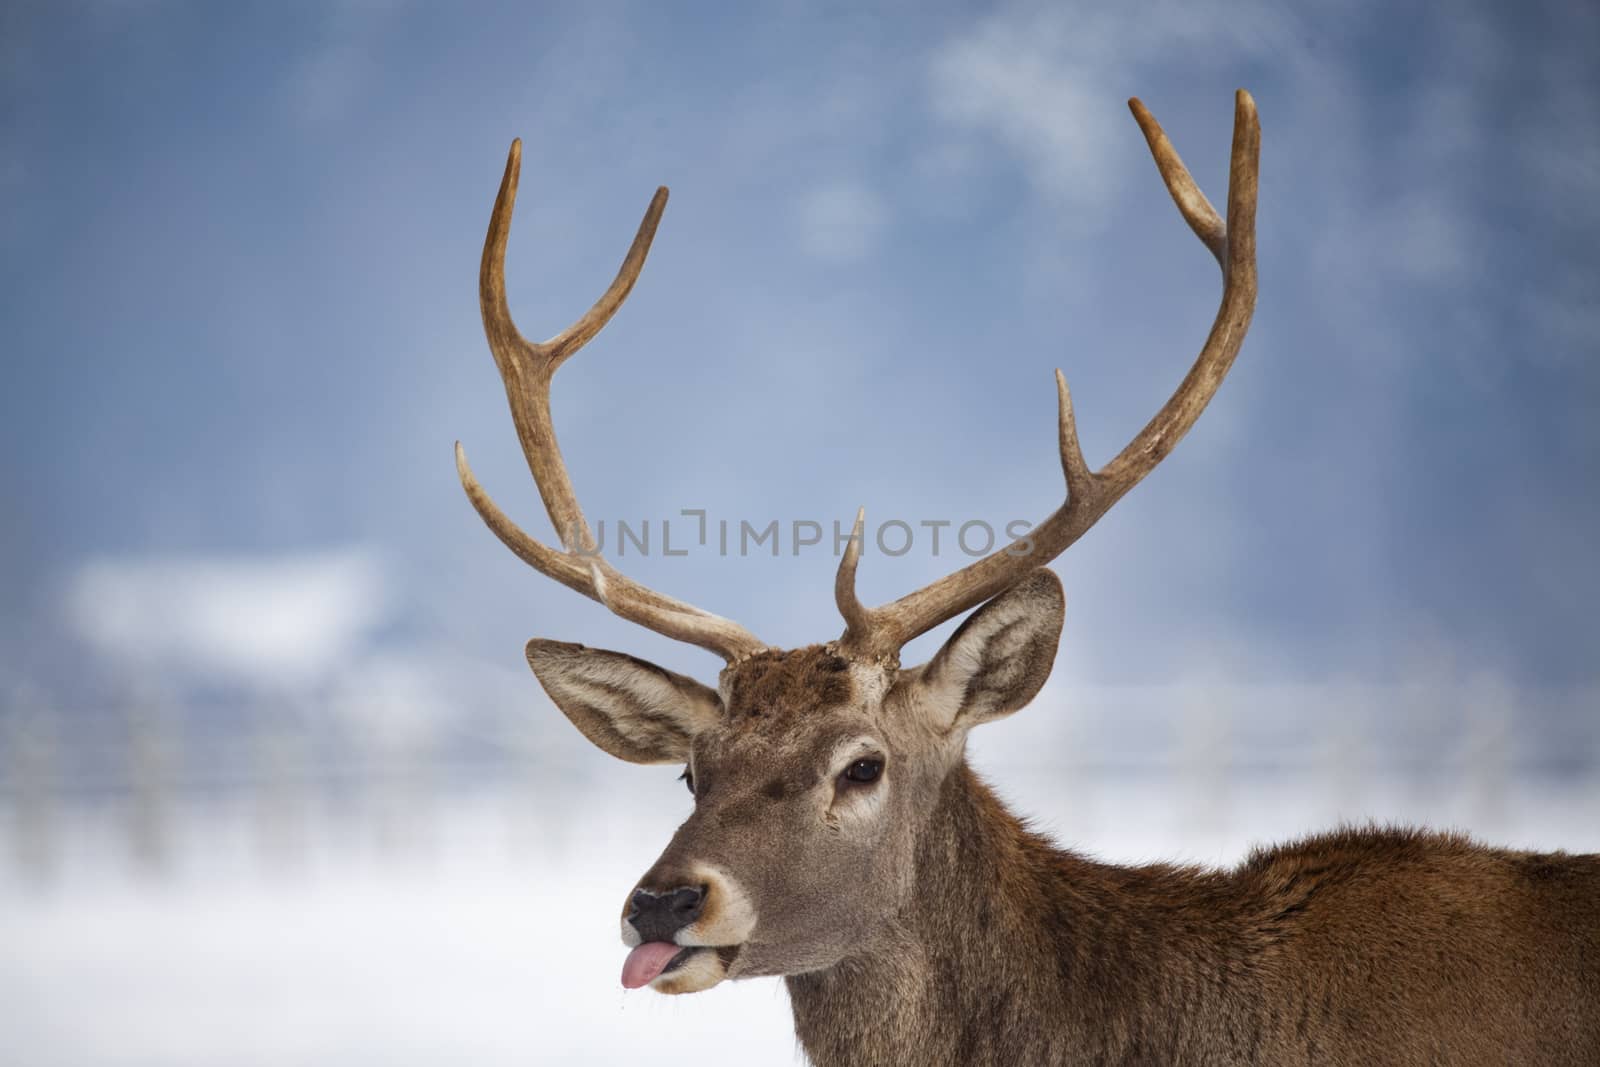 noble deer male in winter snow 